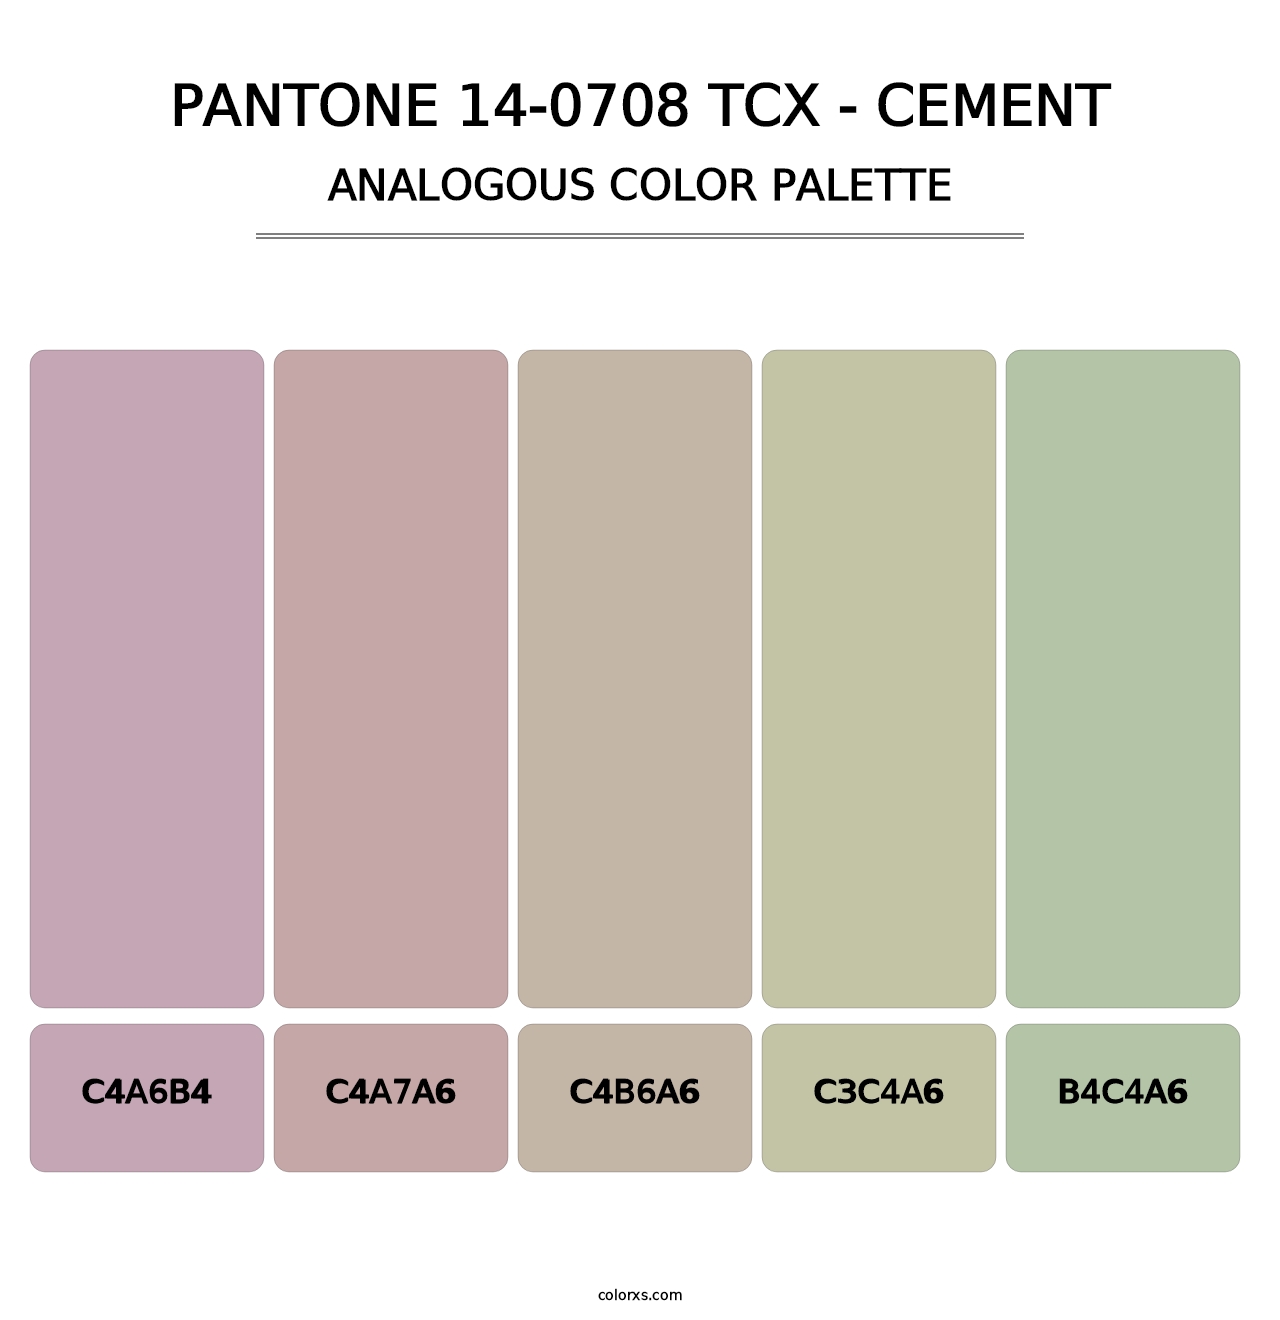 PANTONE 14-0708 TCX - Cement - Analogous Color Palette